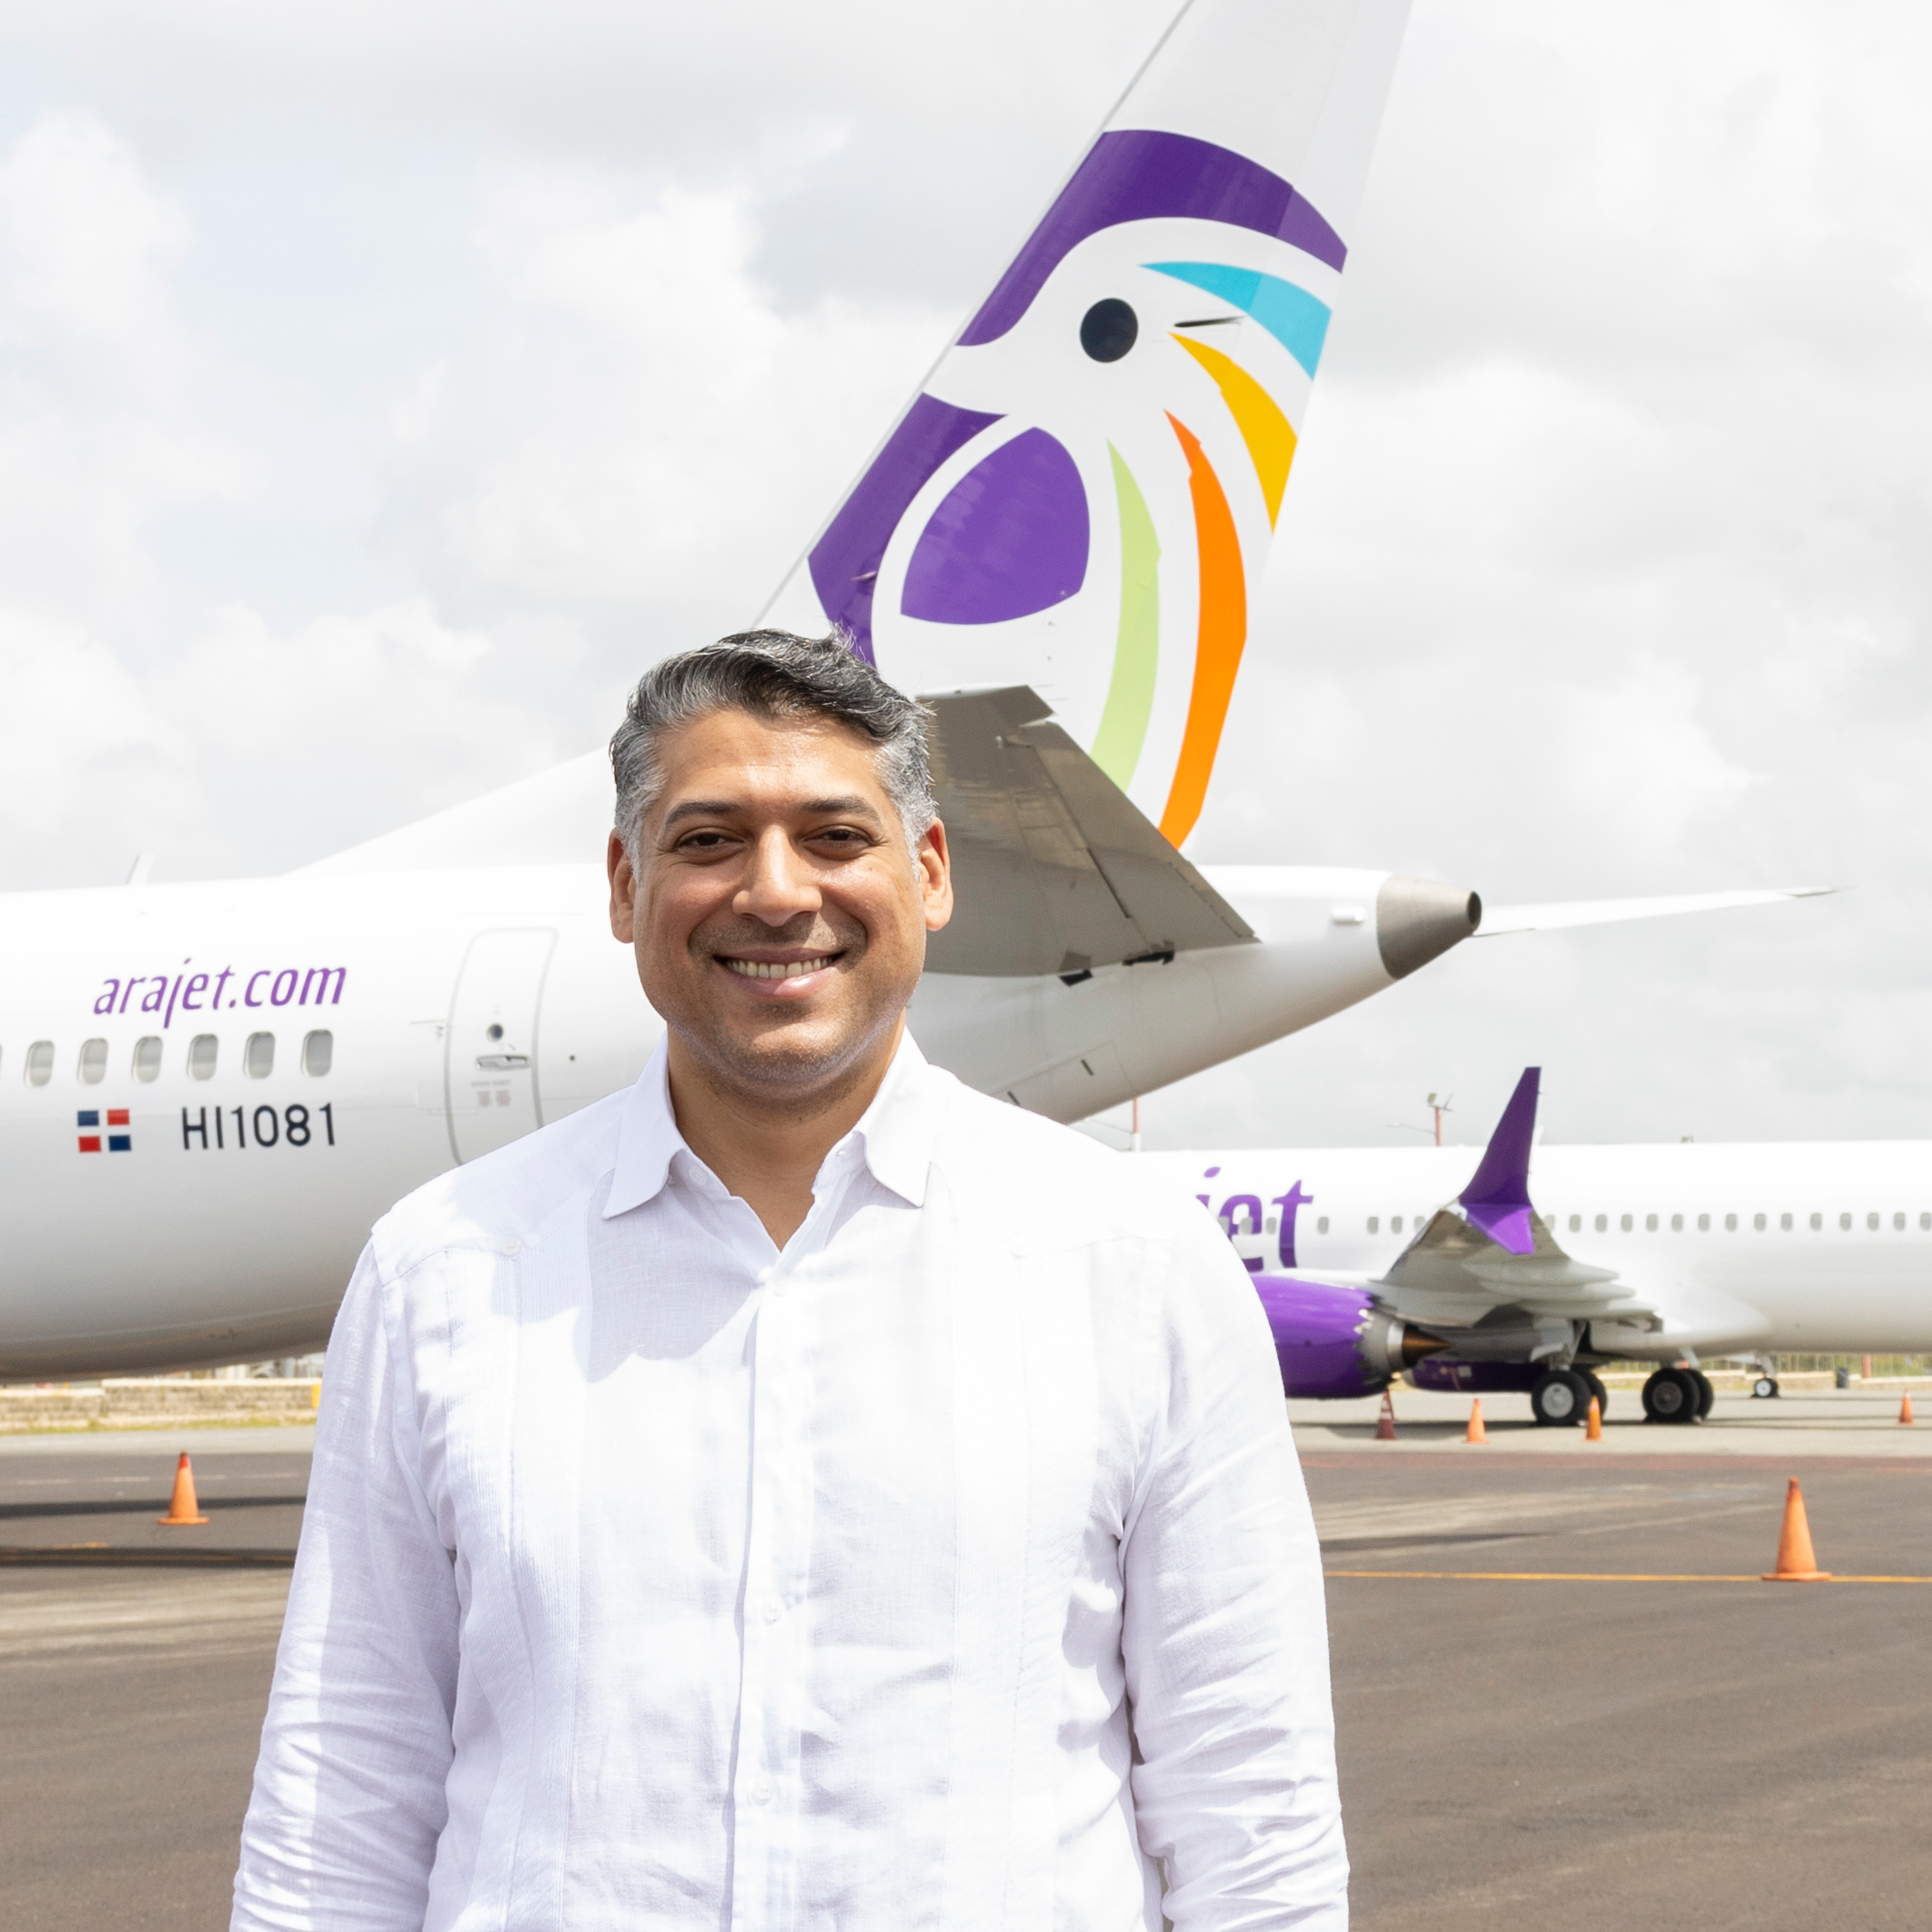 Arajet espera transportar a más de 7 millones de visitantes a la República Dominicana